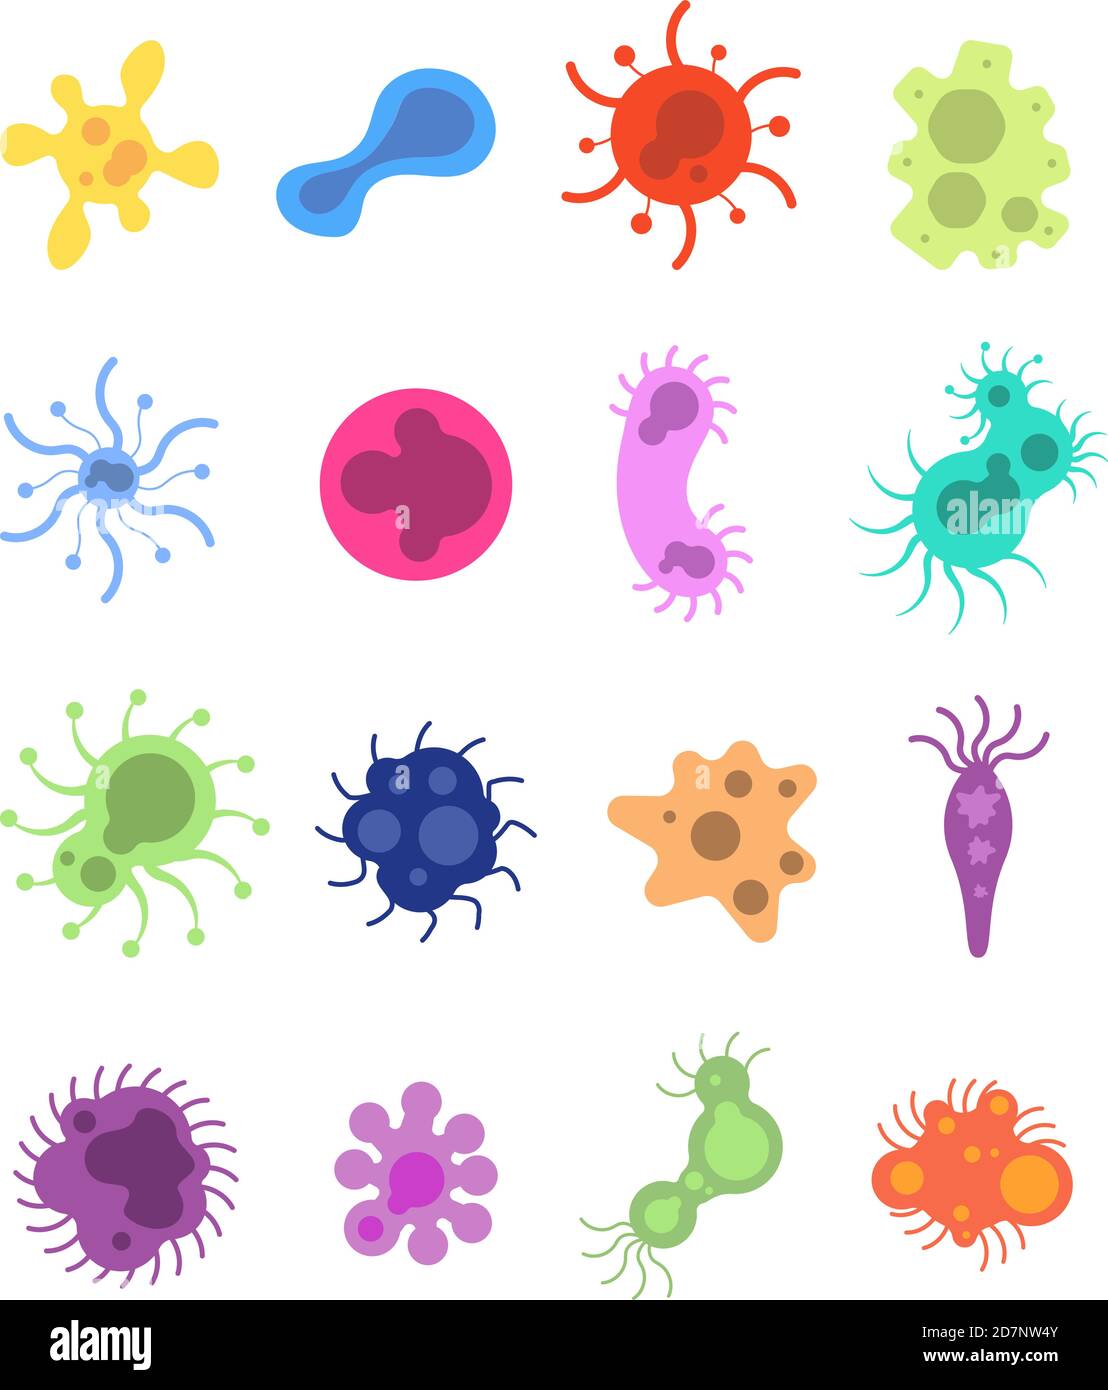 Set di germi. Virus influenzale tossina cellule microbi ameba epidemiologia batteri malattia germe influenza cellula microbiologia isolato vettore set. Ameba e influenza, cellule e malattie, malattia batterio illustrazione Illustrazione Vettoriale